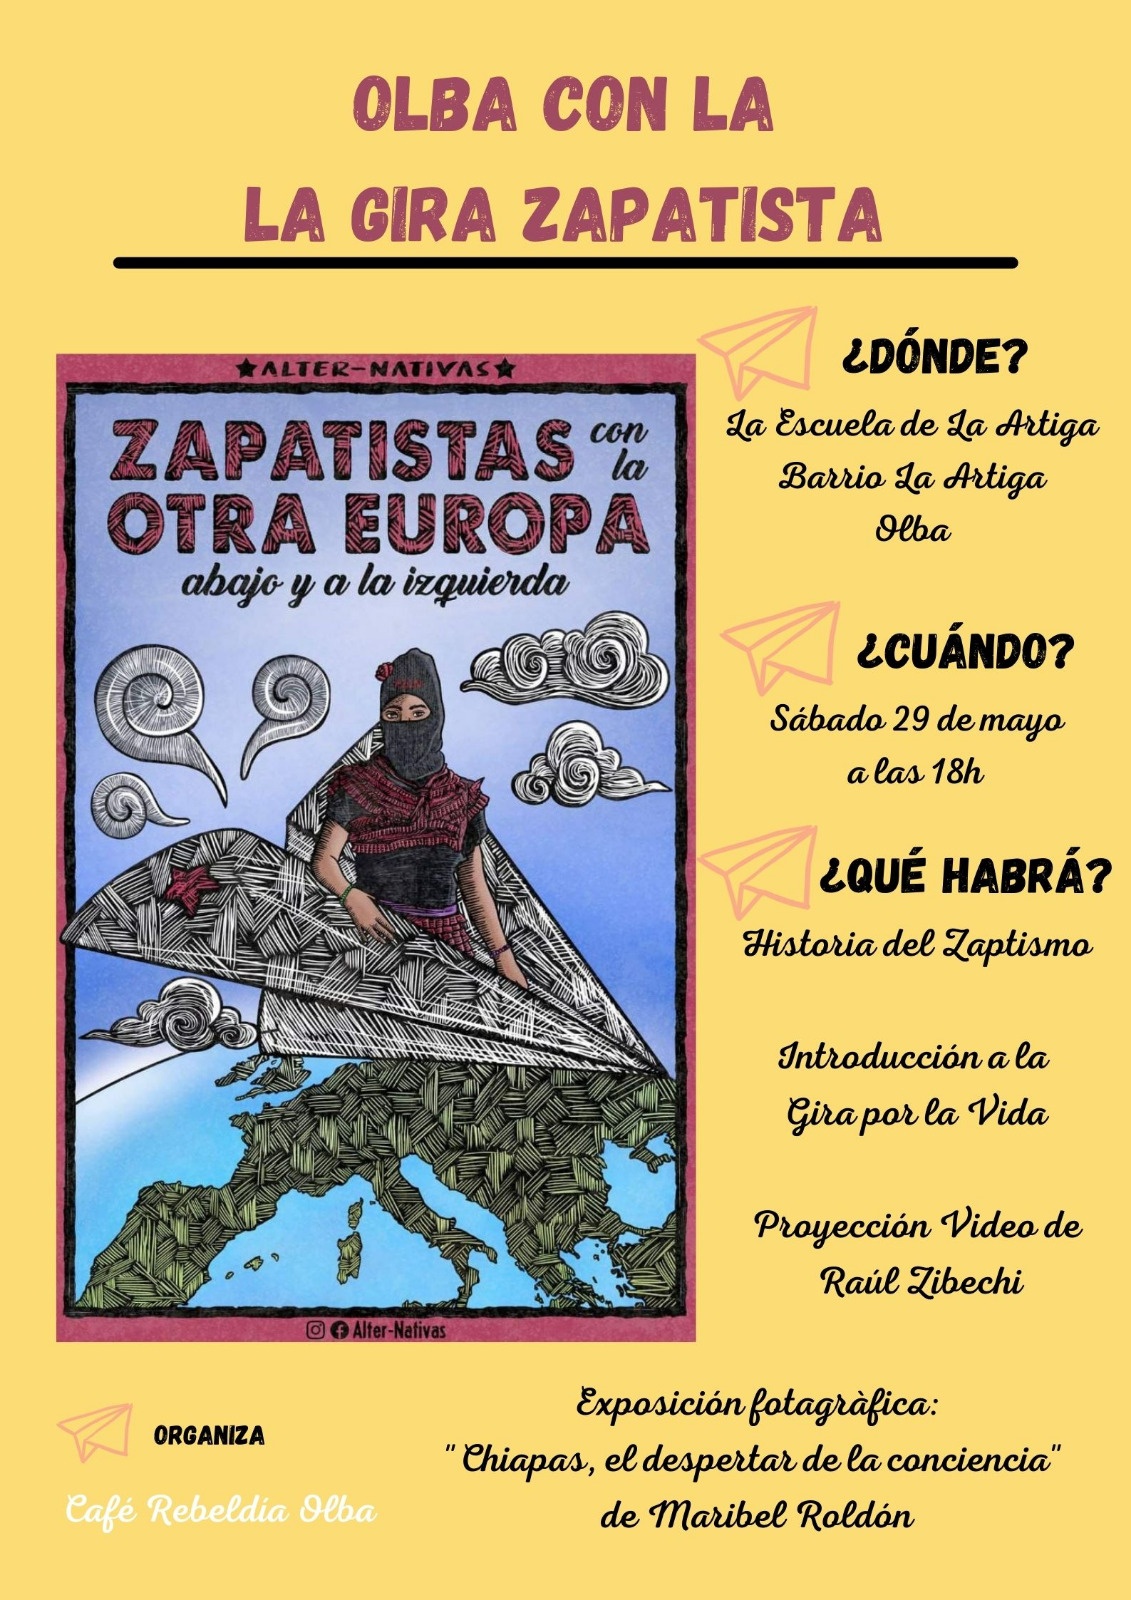 Olba con la Gira Zapatista